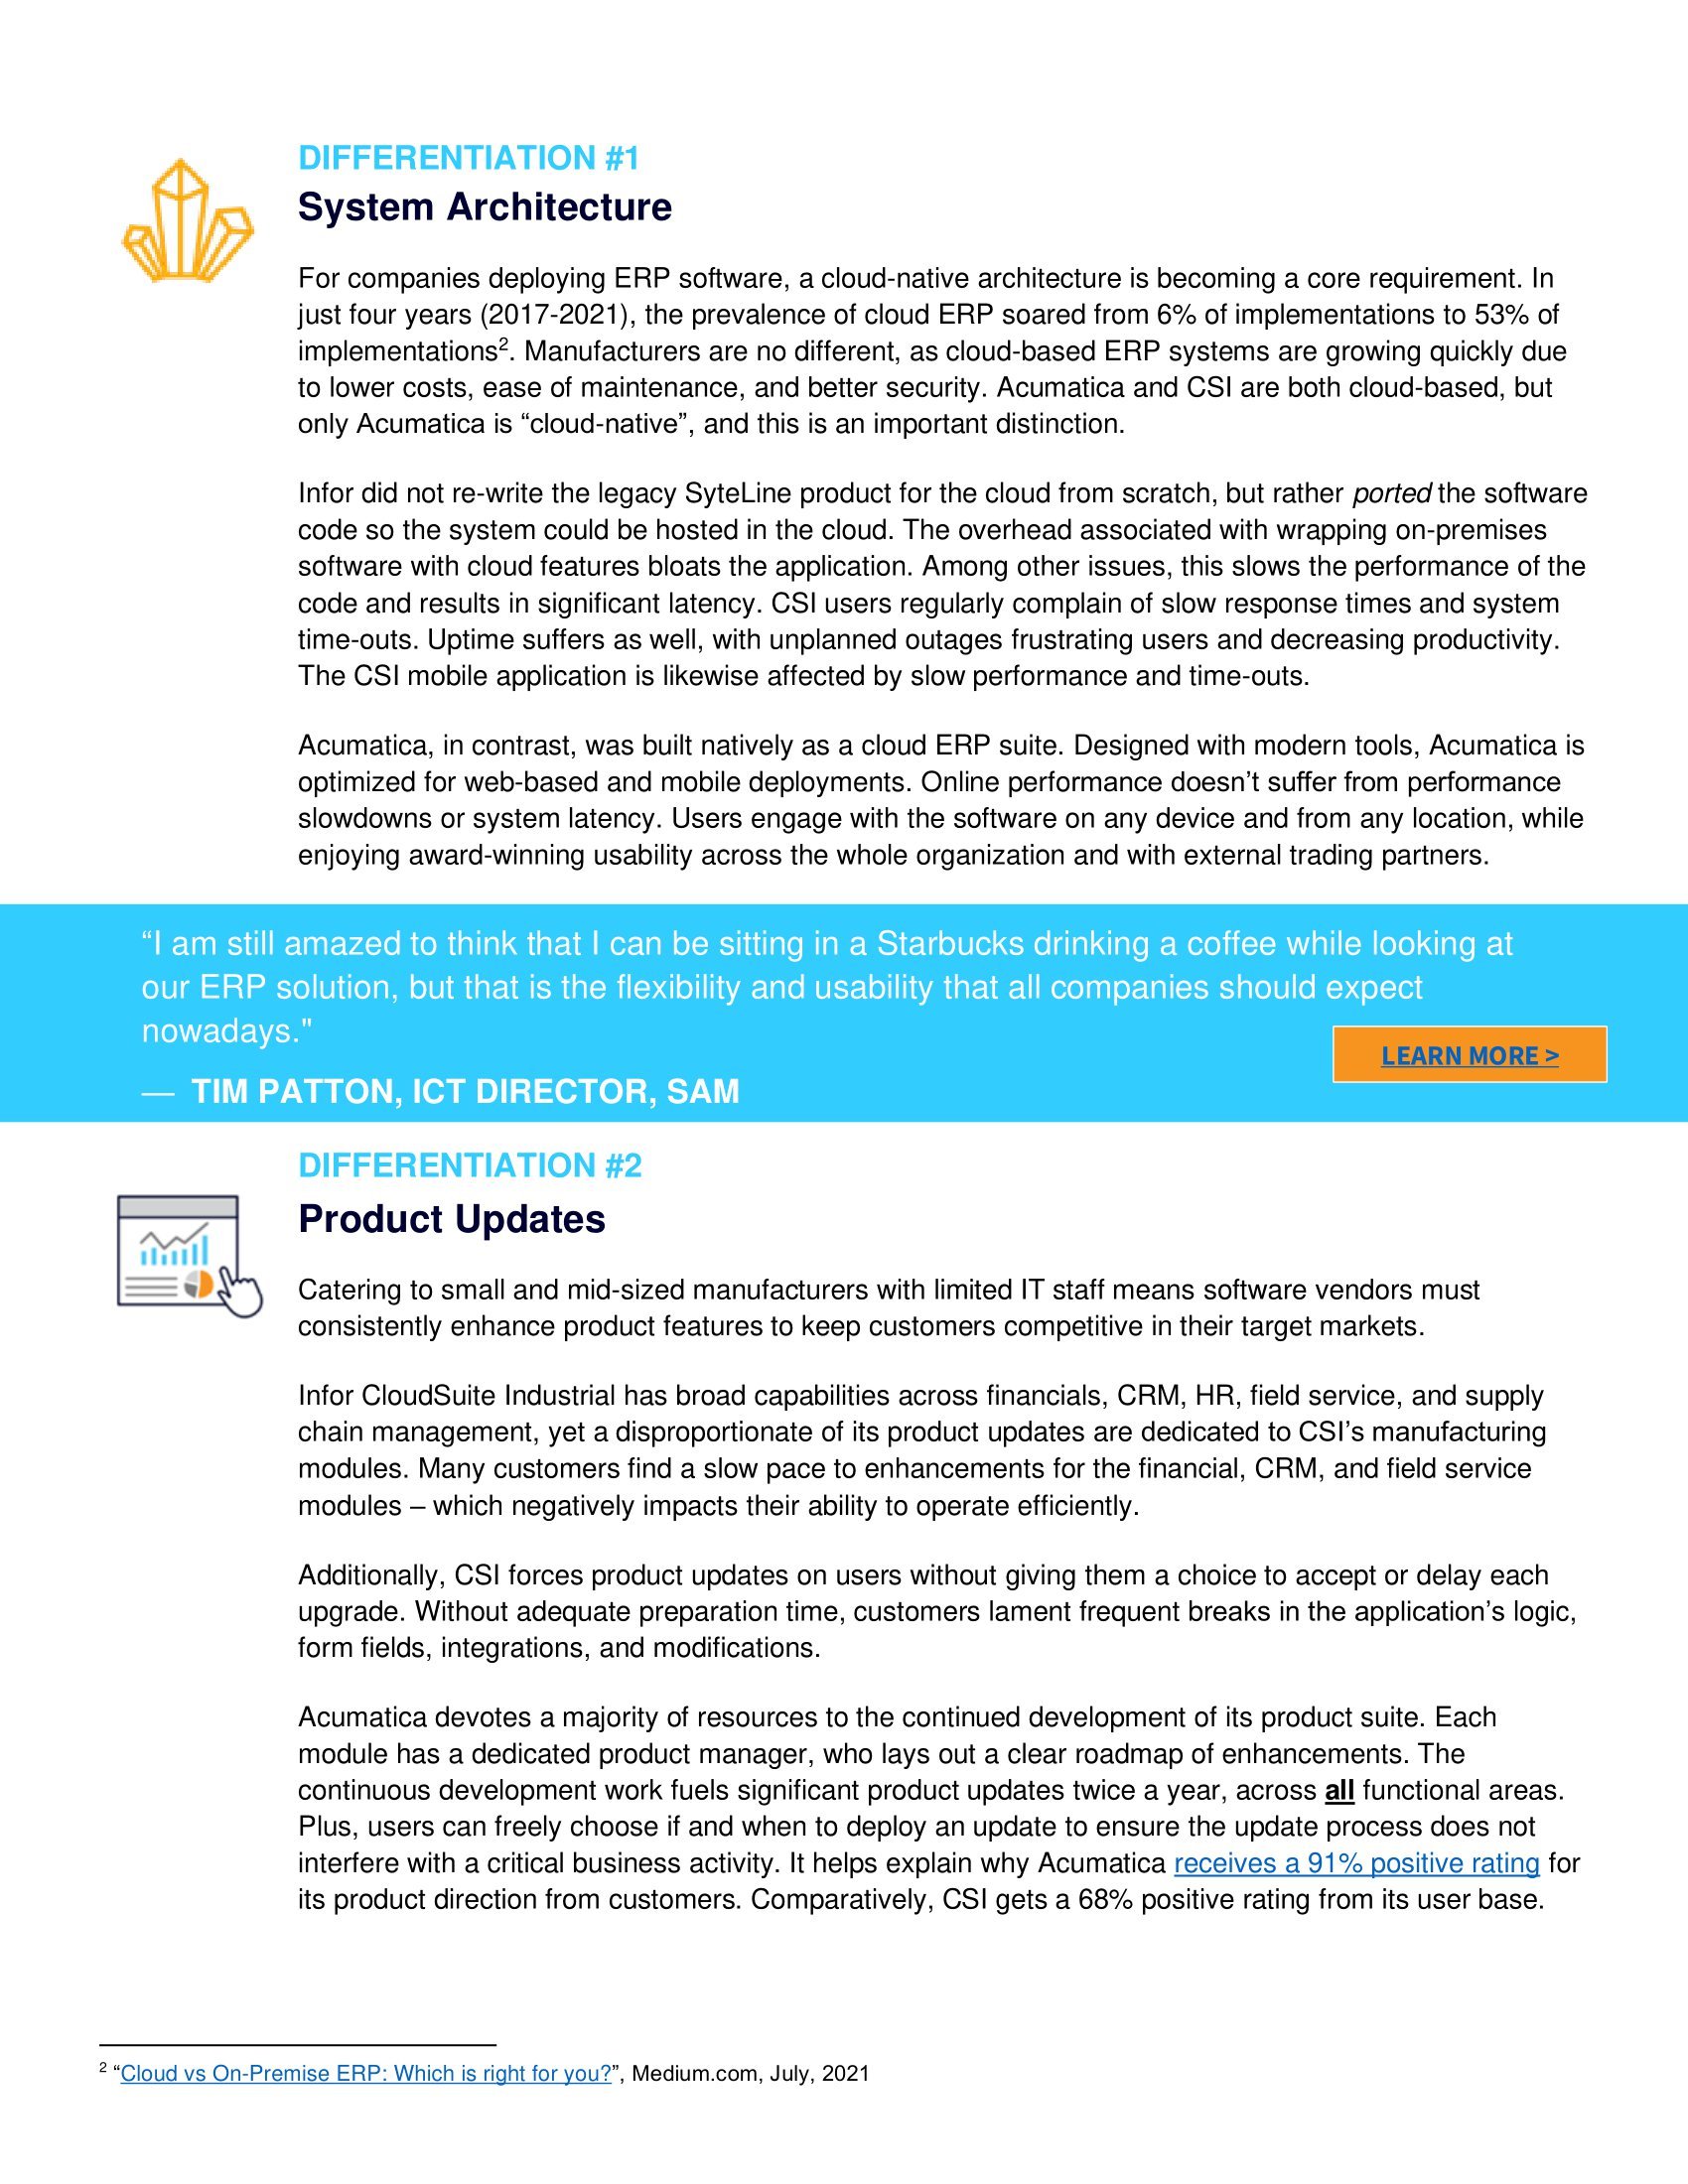 Acumatica vs. Infor CloudSuite Industrial : Passer au crible les différences pour les industriels, page 1